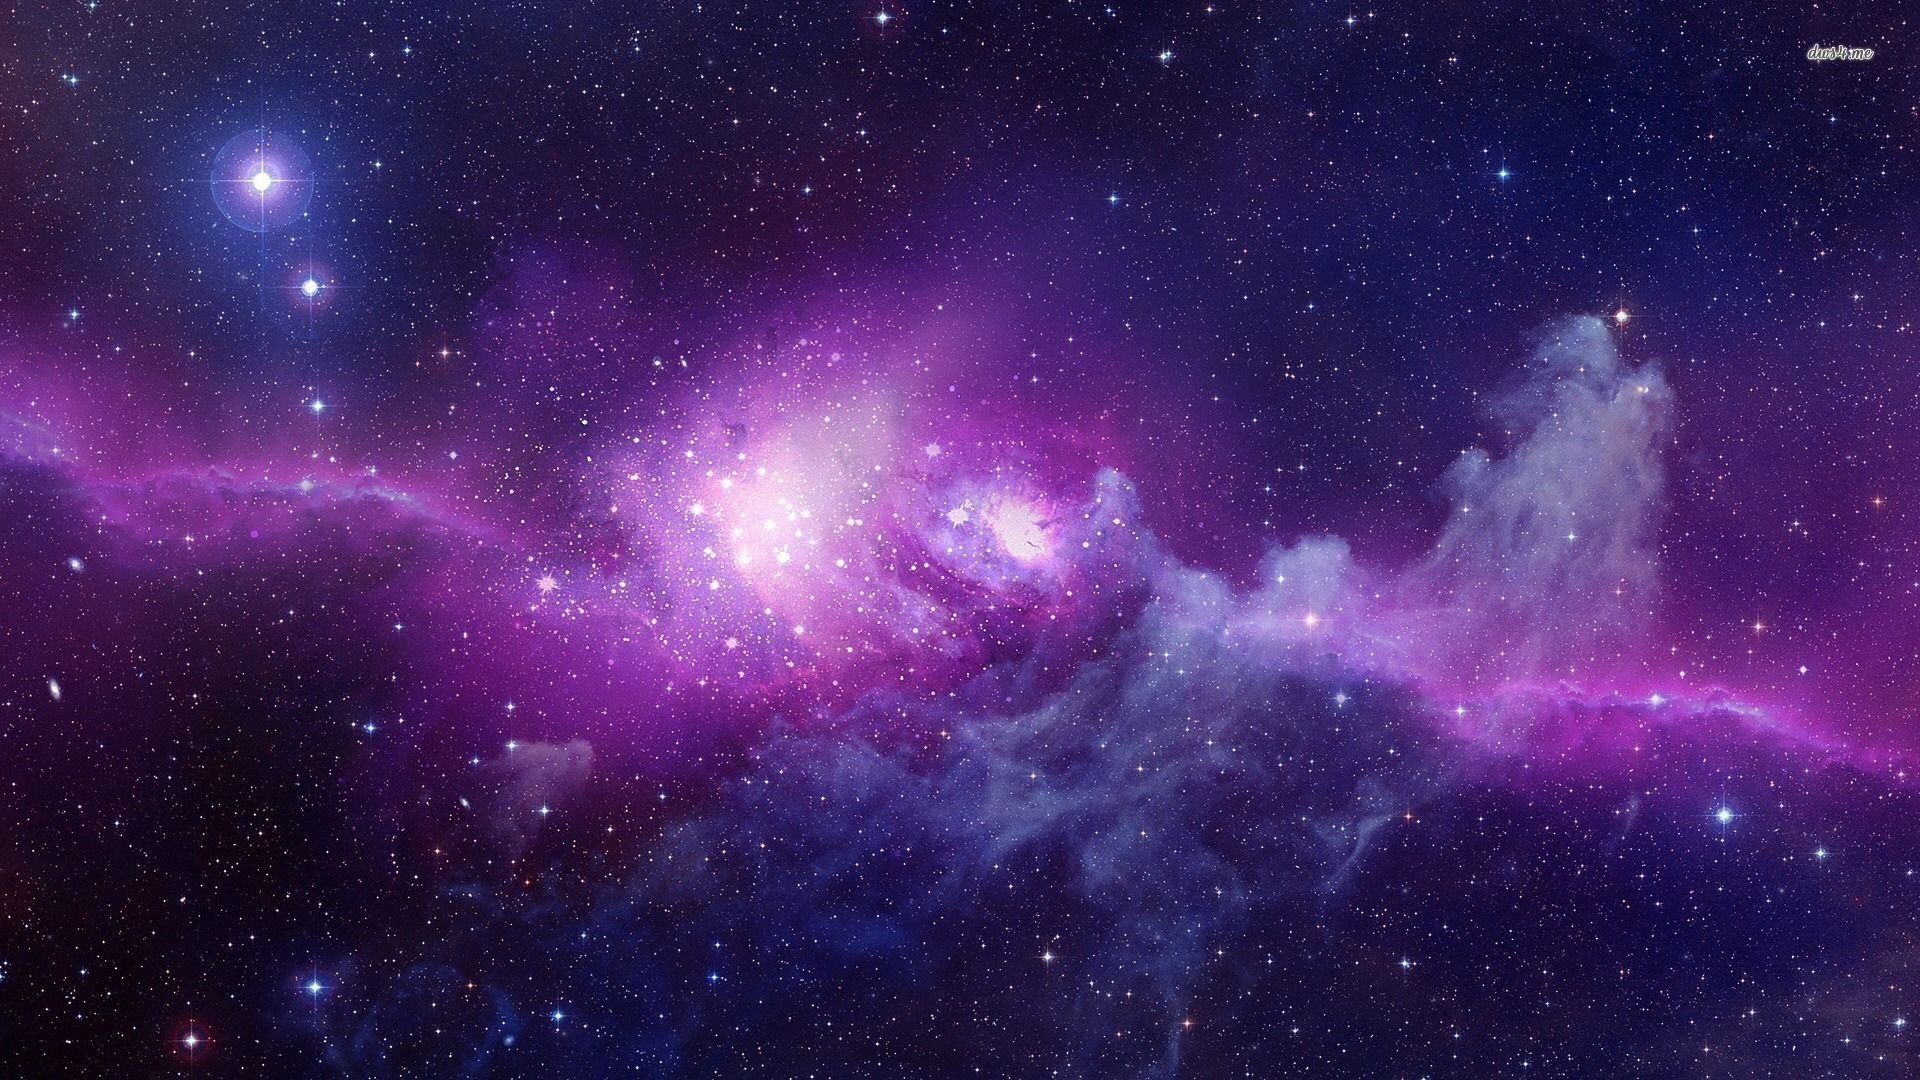 Purple Blue Nebula Wallpapers